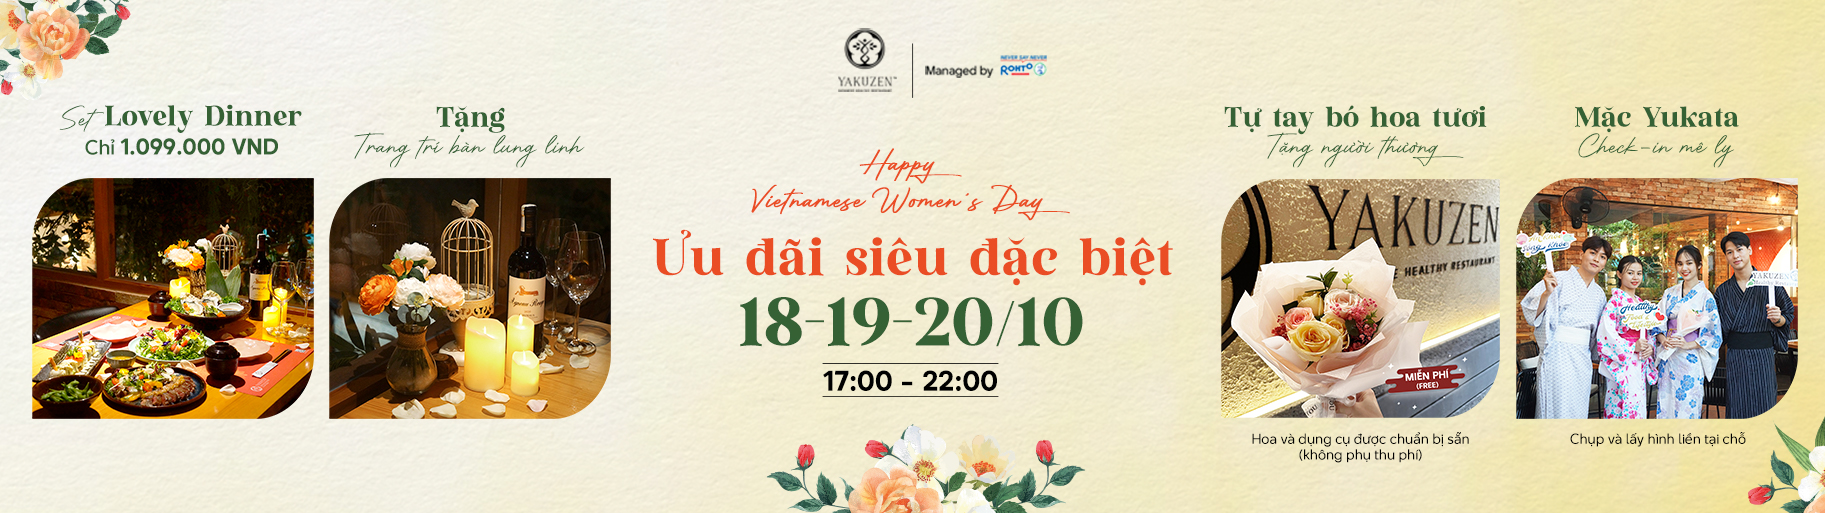 Happy Vietnamese Women’s Day: Sweet promotions from Yakuzen